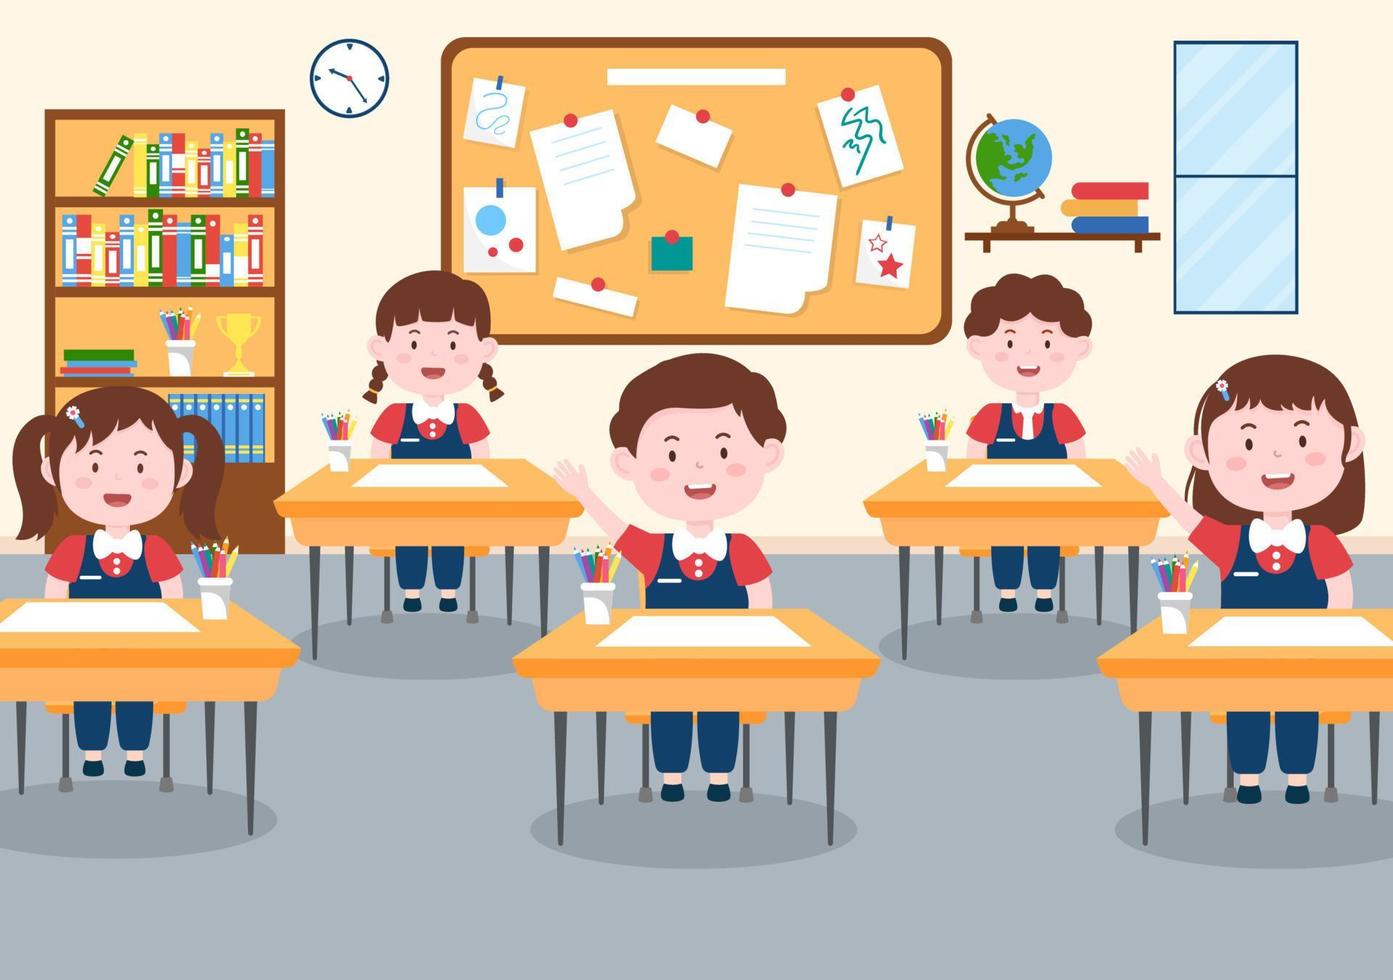 escuela primaria con pequeños estudiantes lindos que estudian en el aula en plantilla de ilustración de dibujos animados plana dibujada a mano vector